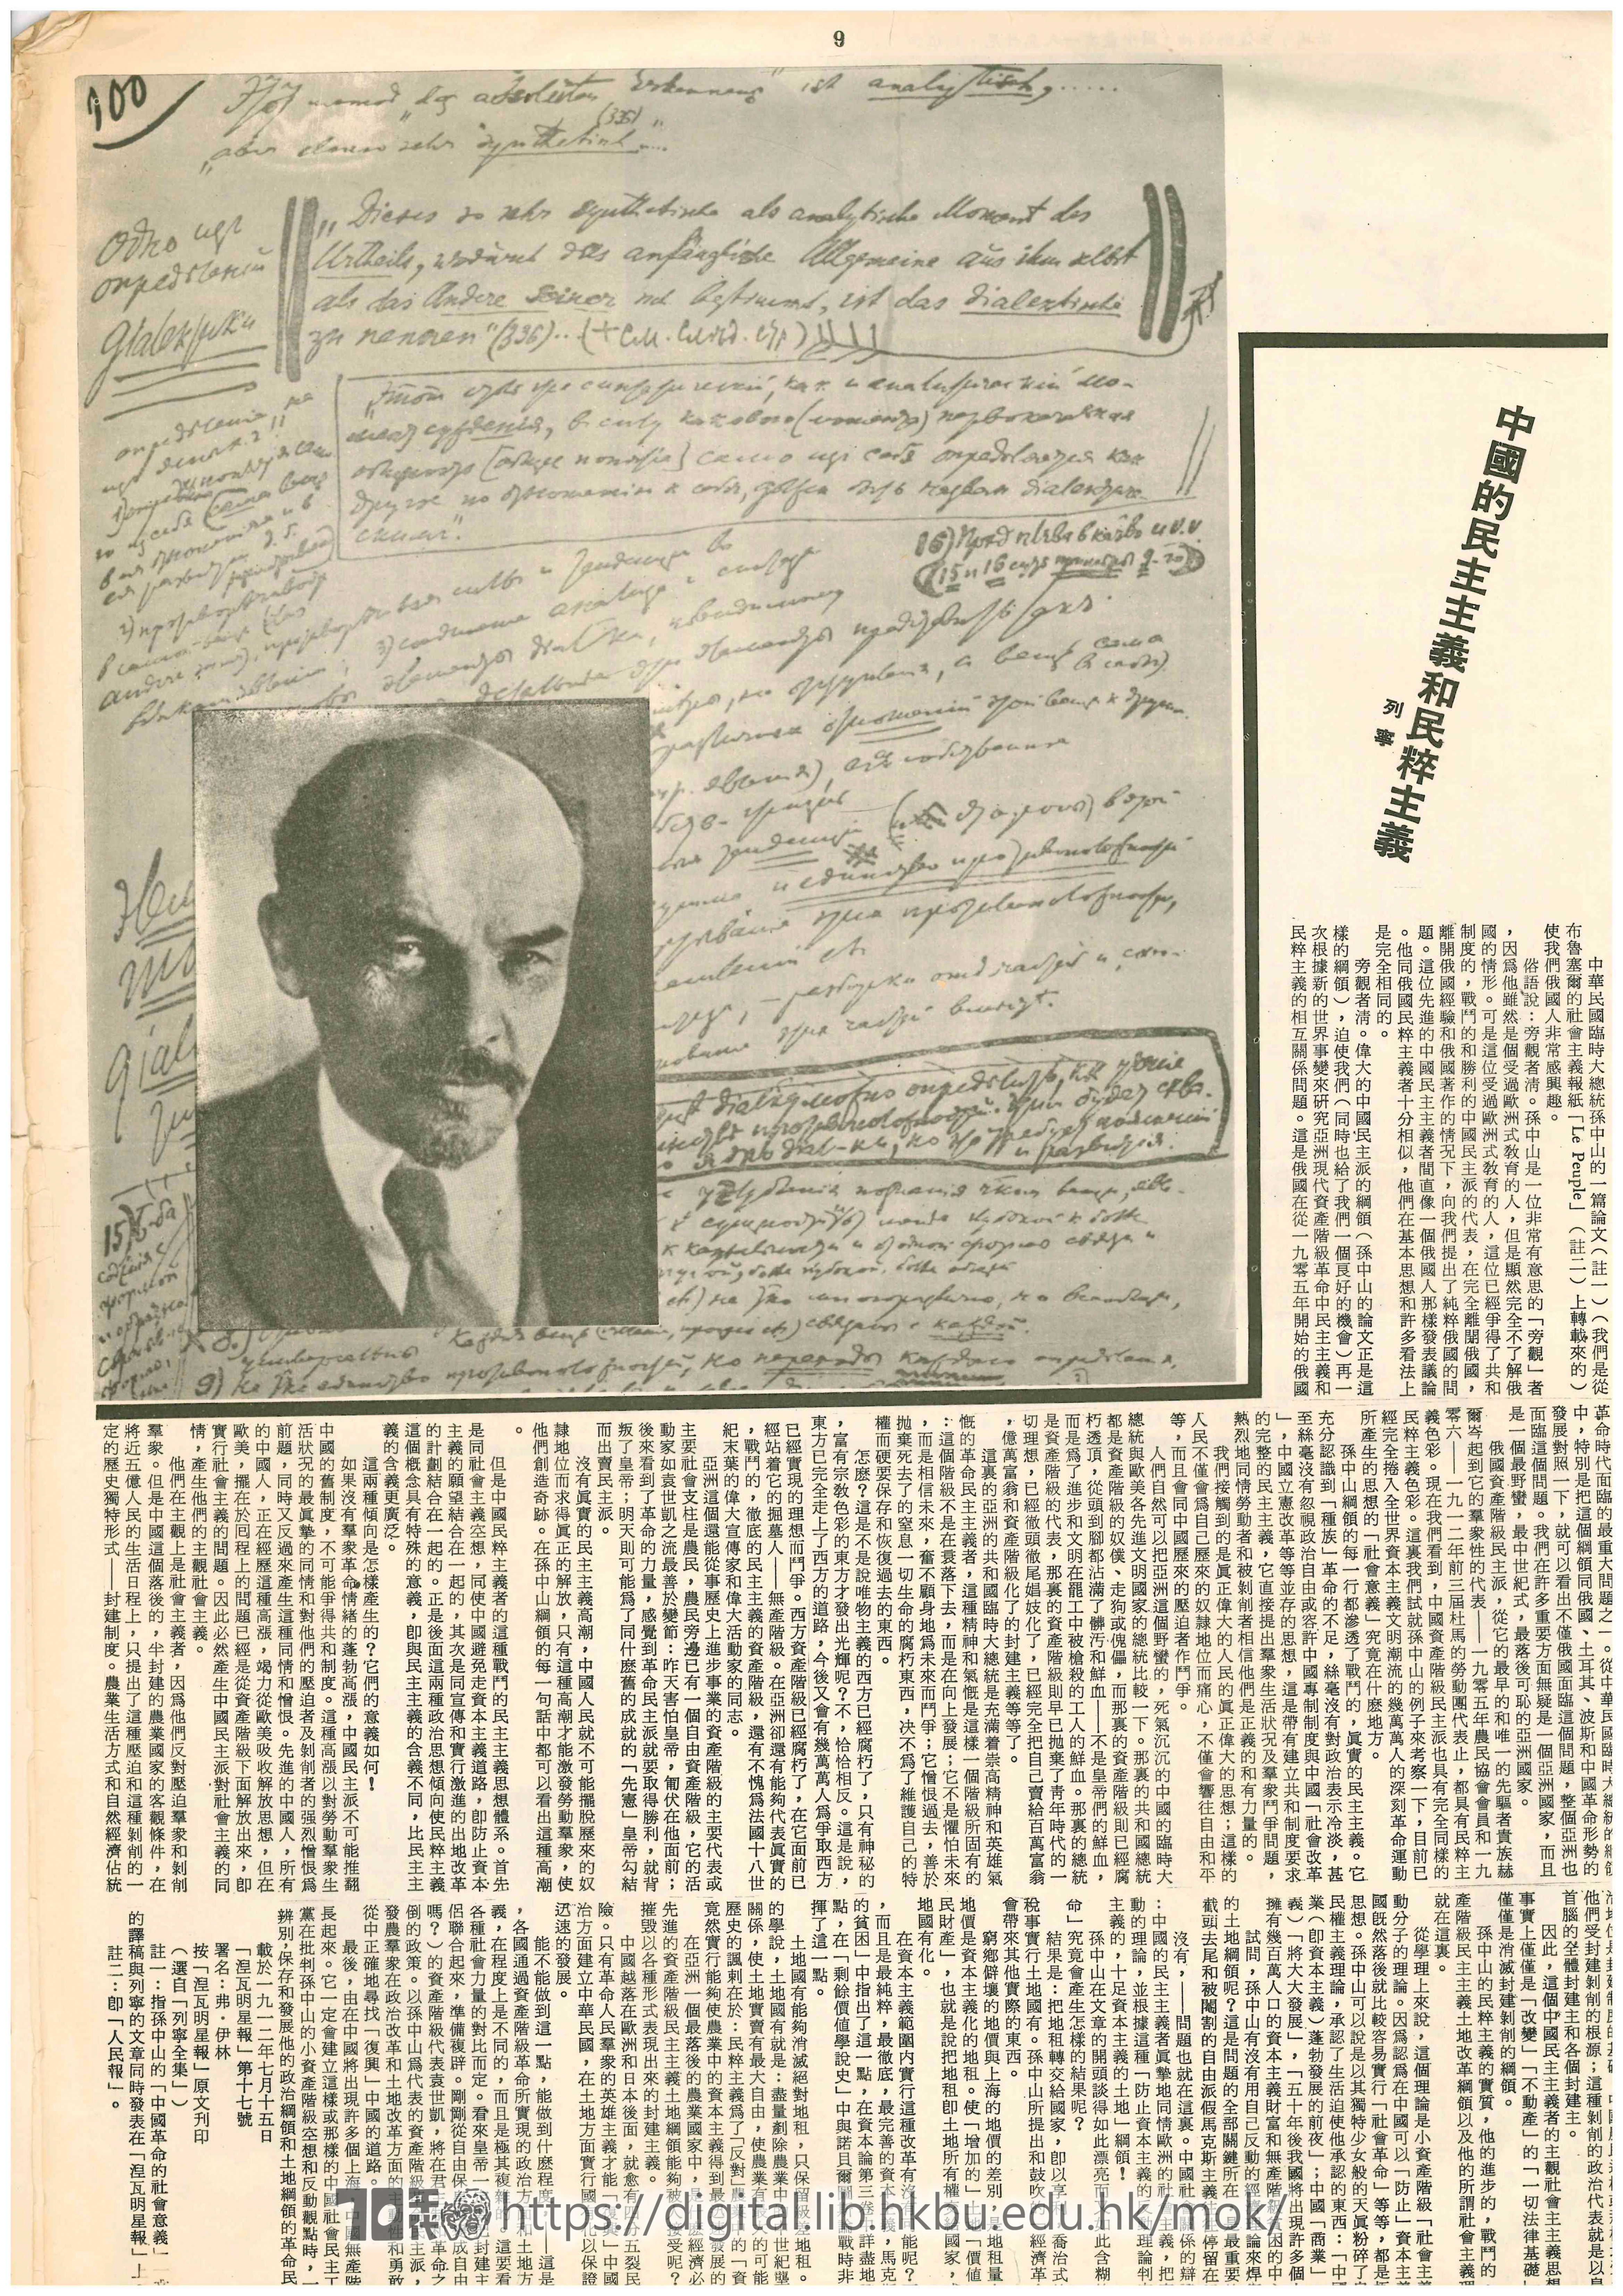  6 Lenin - the mentor of Communist actions 青韋 